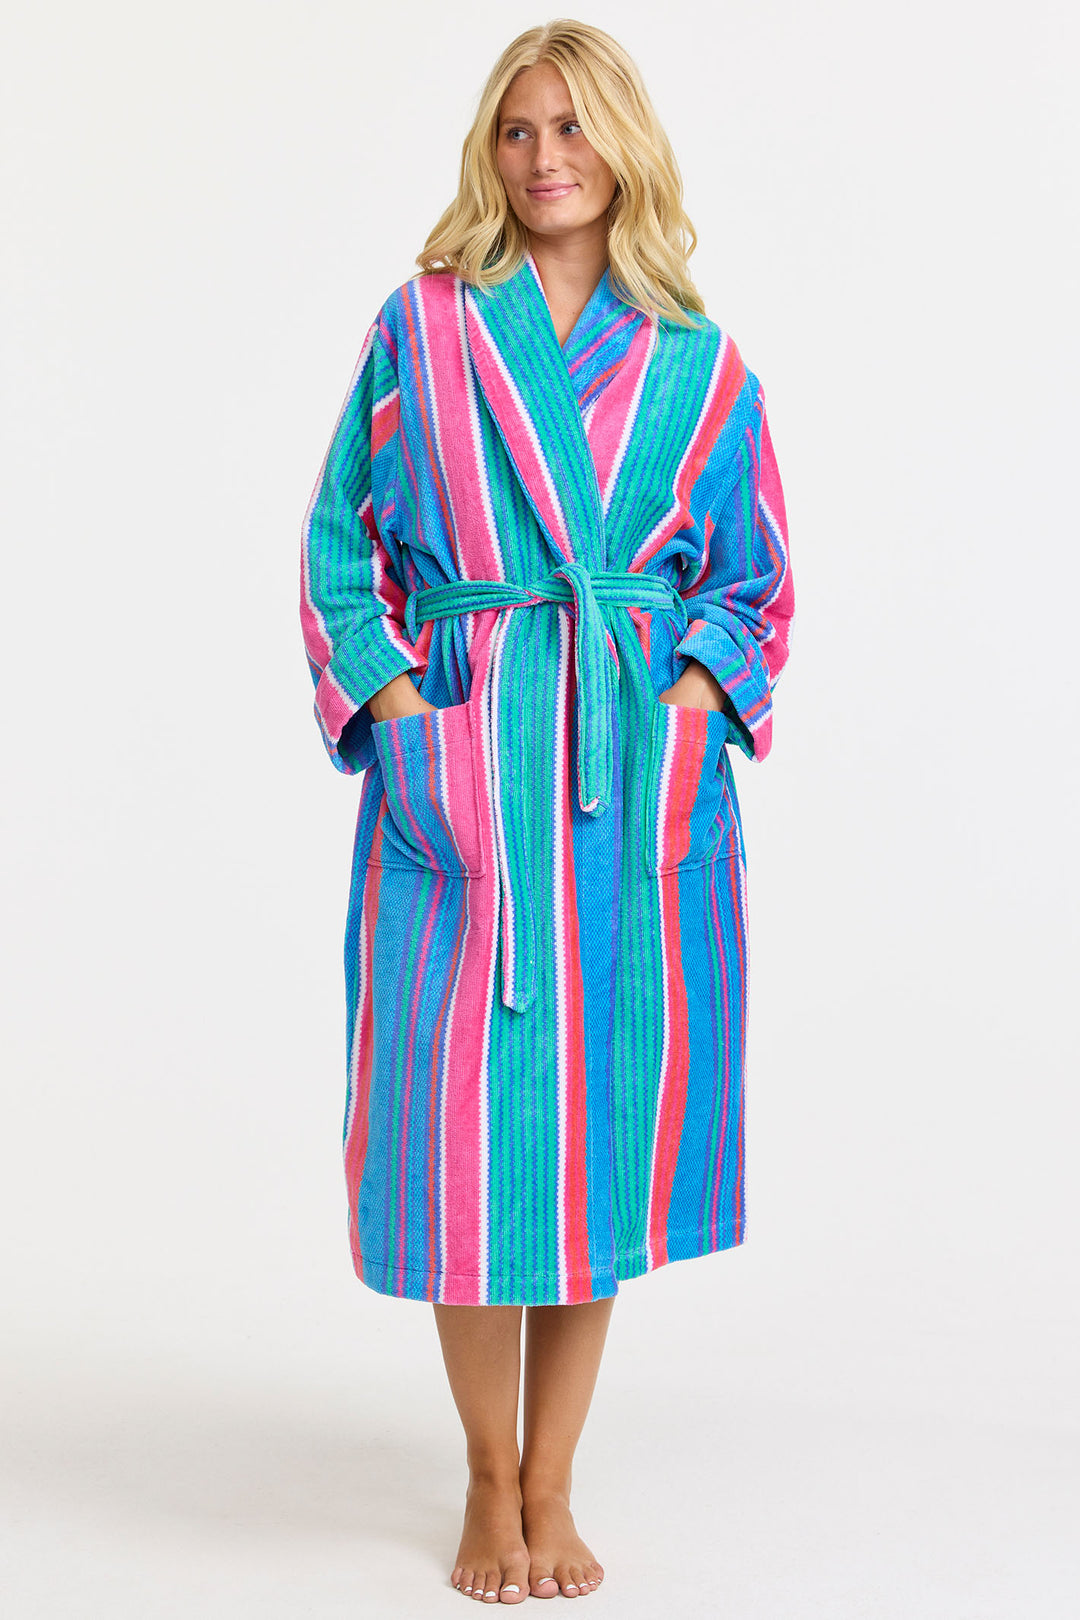 Damella 90878 149 Torekov Blue Multicolour Stripe Robe Dressing Gown - Shirley Allum Boutique